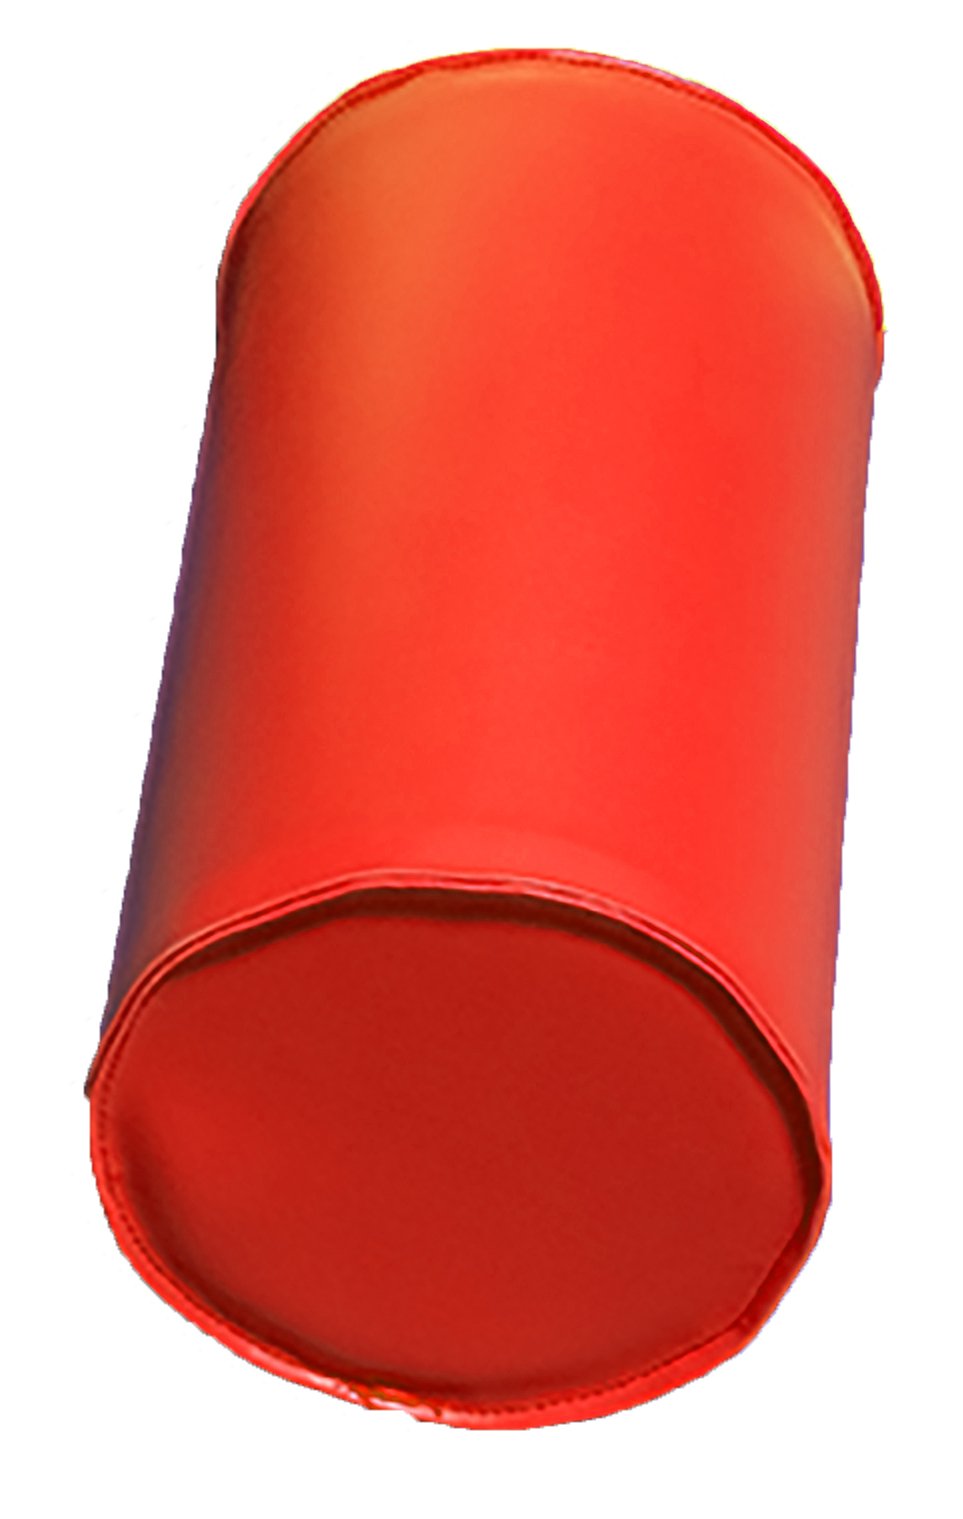 Module cylindre en mousse diam 25cm orange